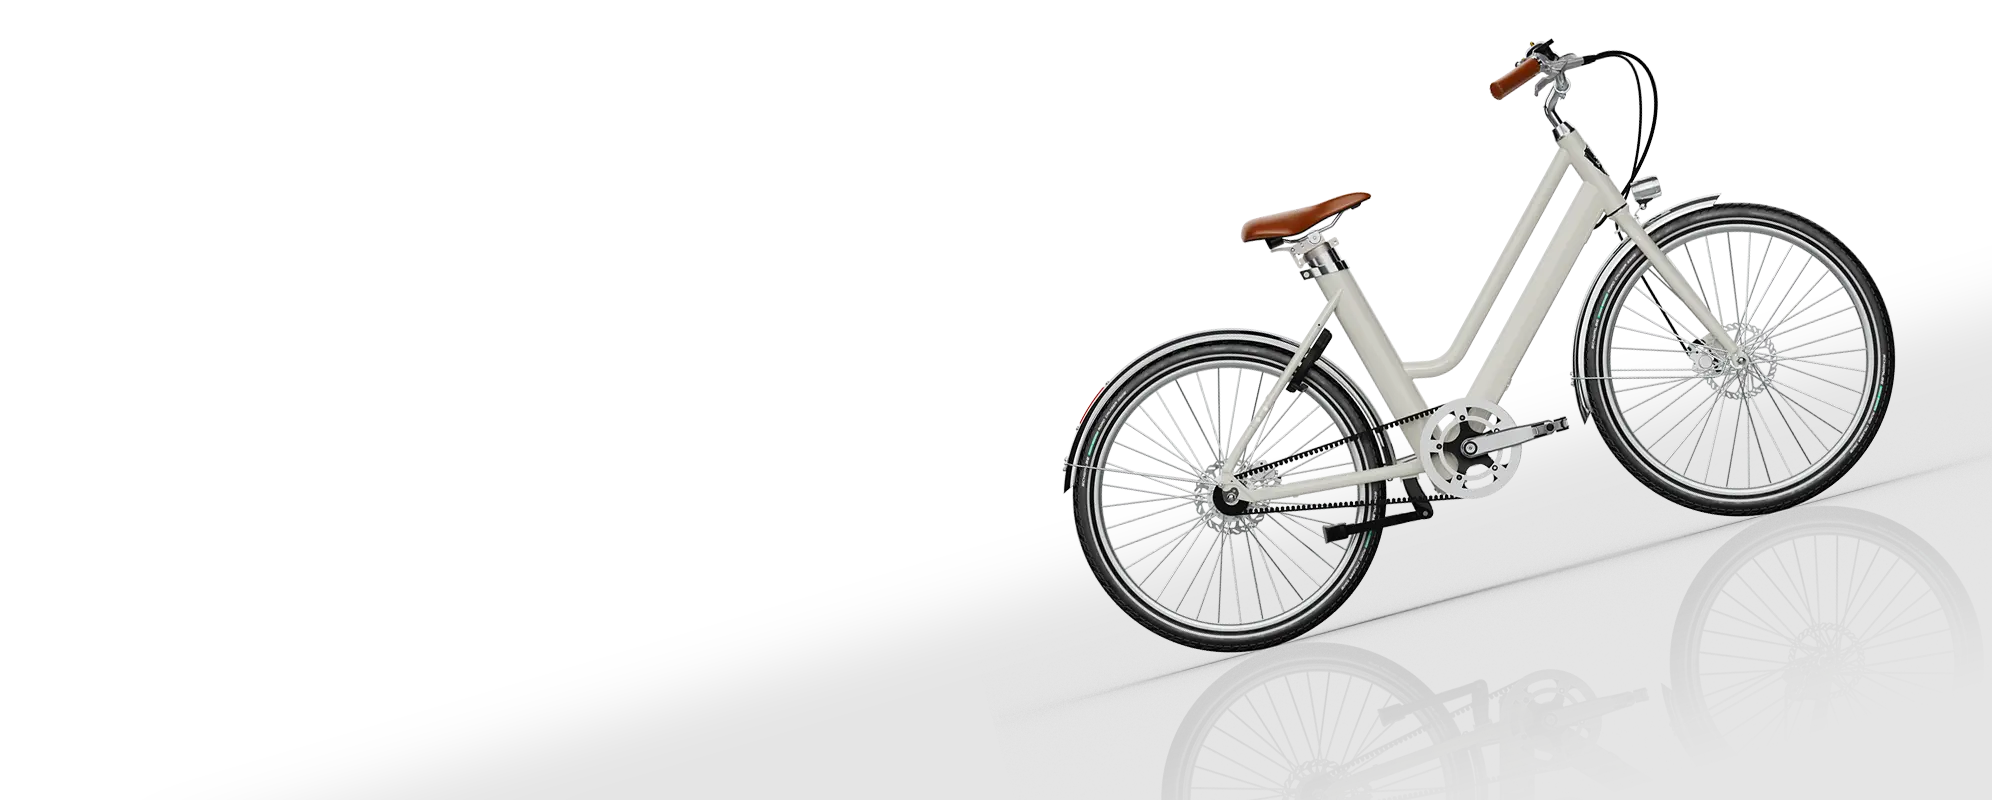 vélo classique photo voltaire